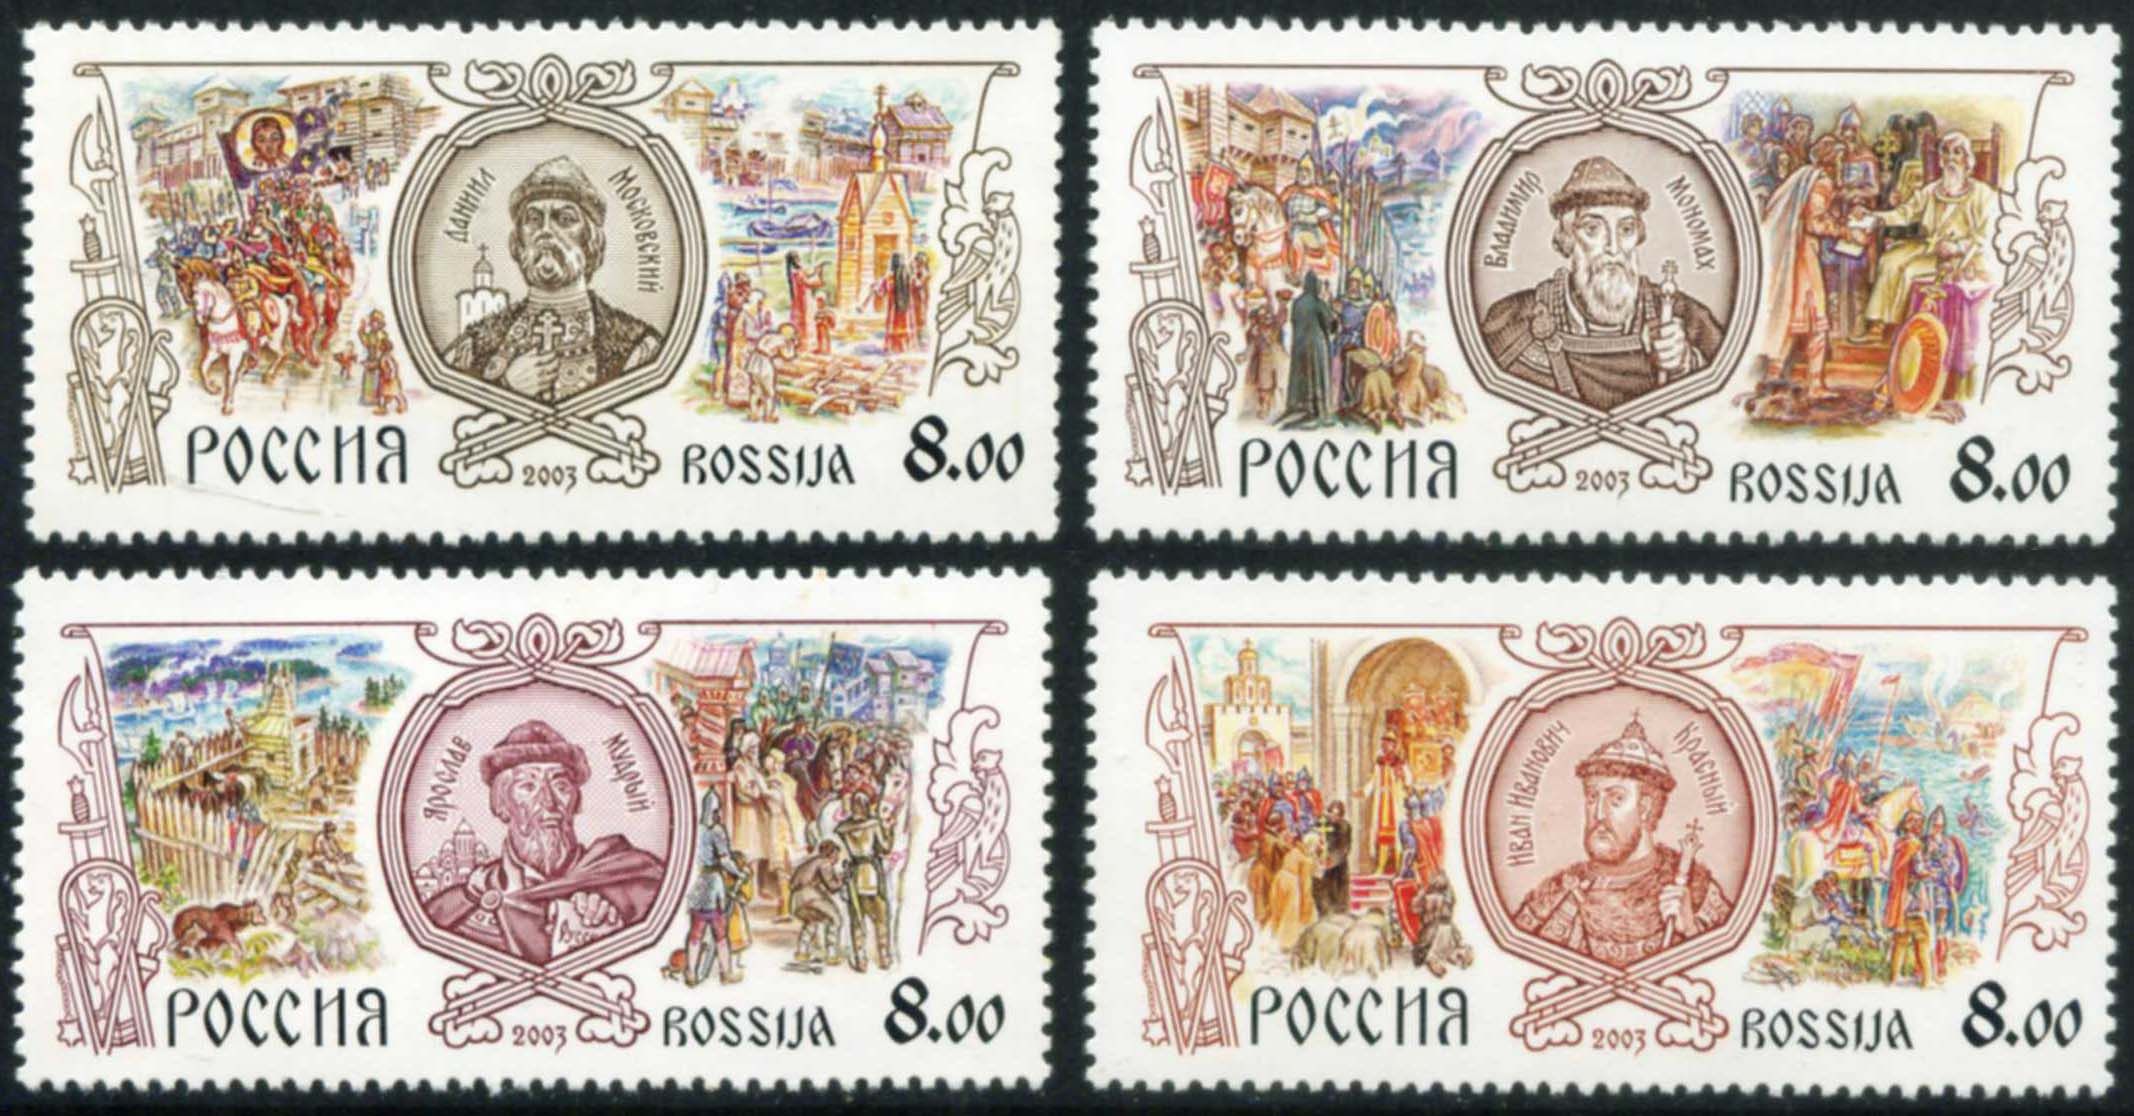 Название марка первого. Марки почтовые российские. Исторические марки. Марки с князьями.